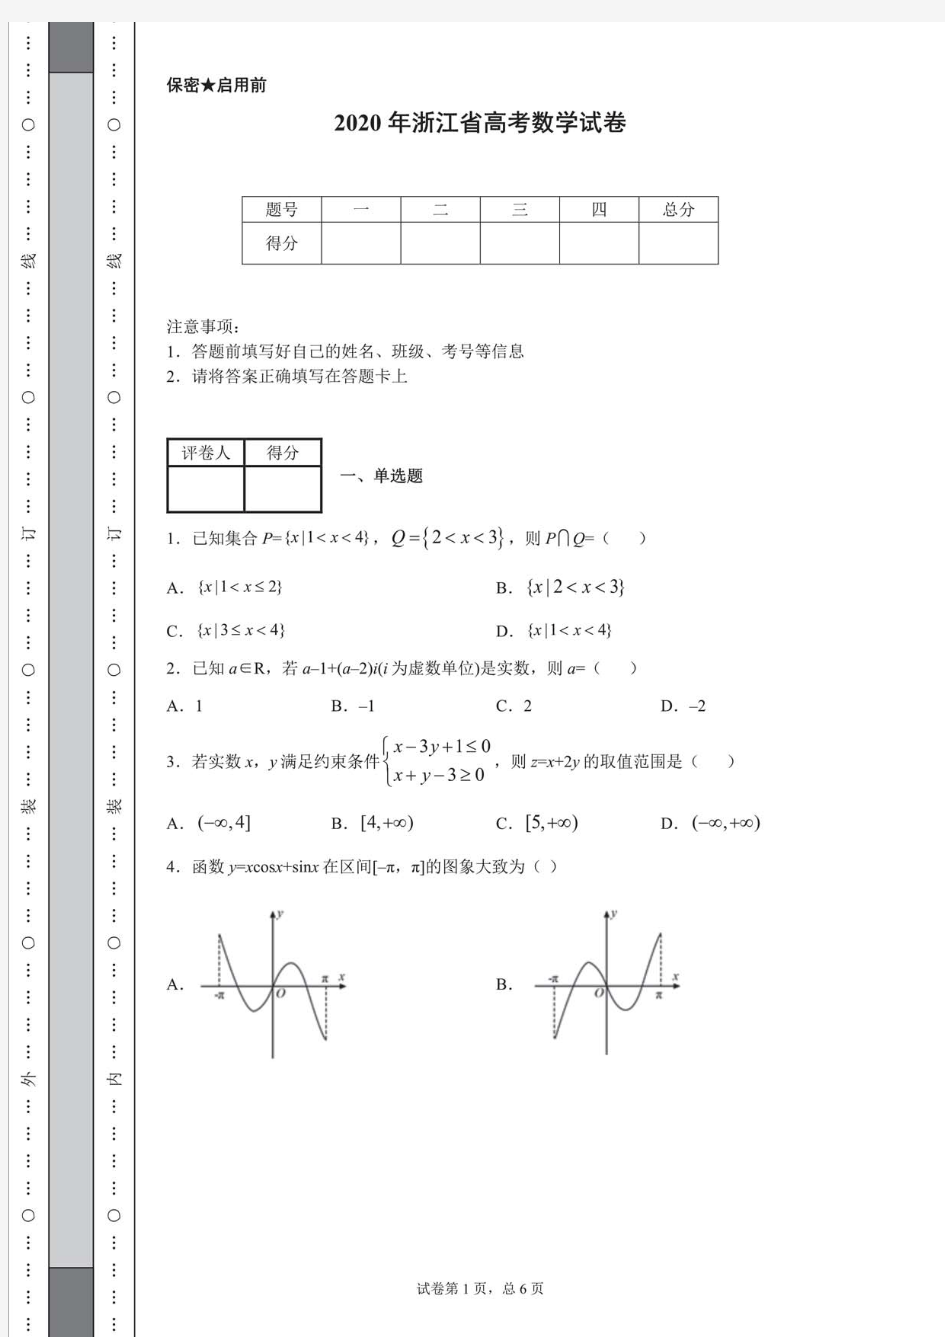 2020年浙江省高考数学试卷(含详细解析)